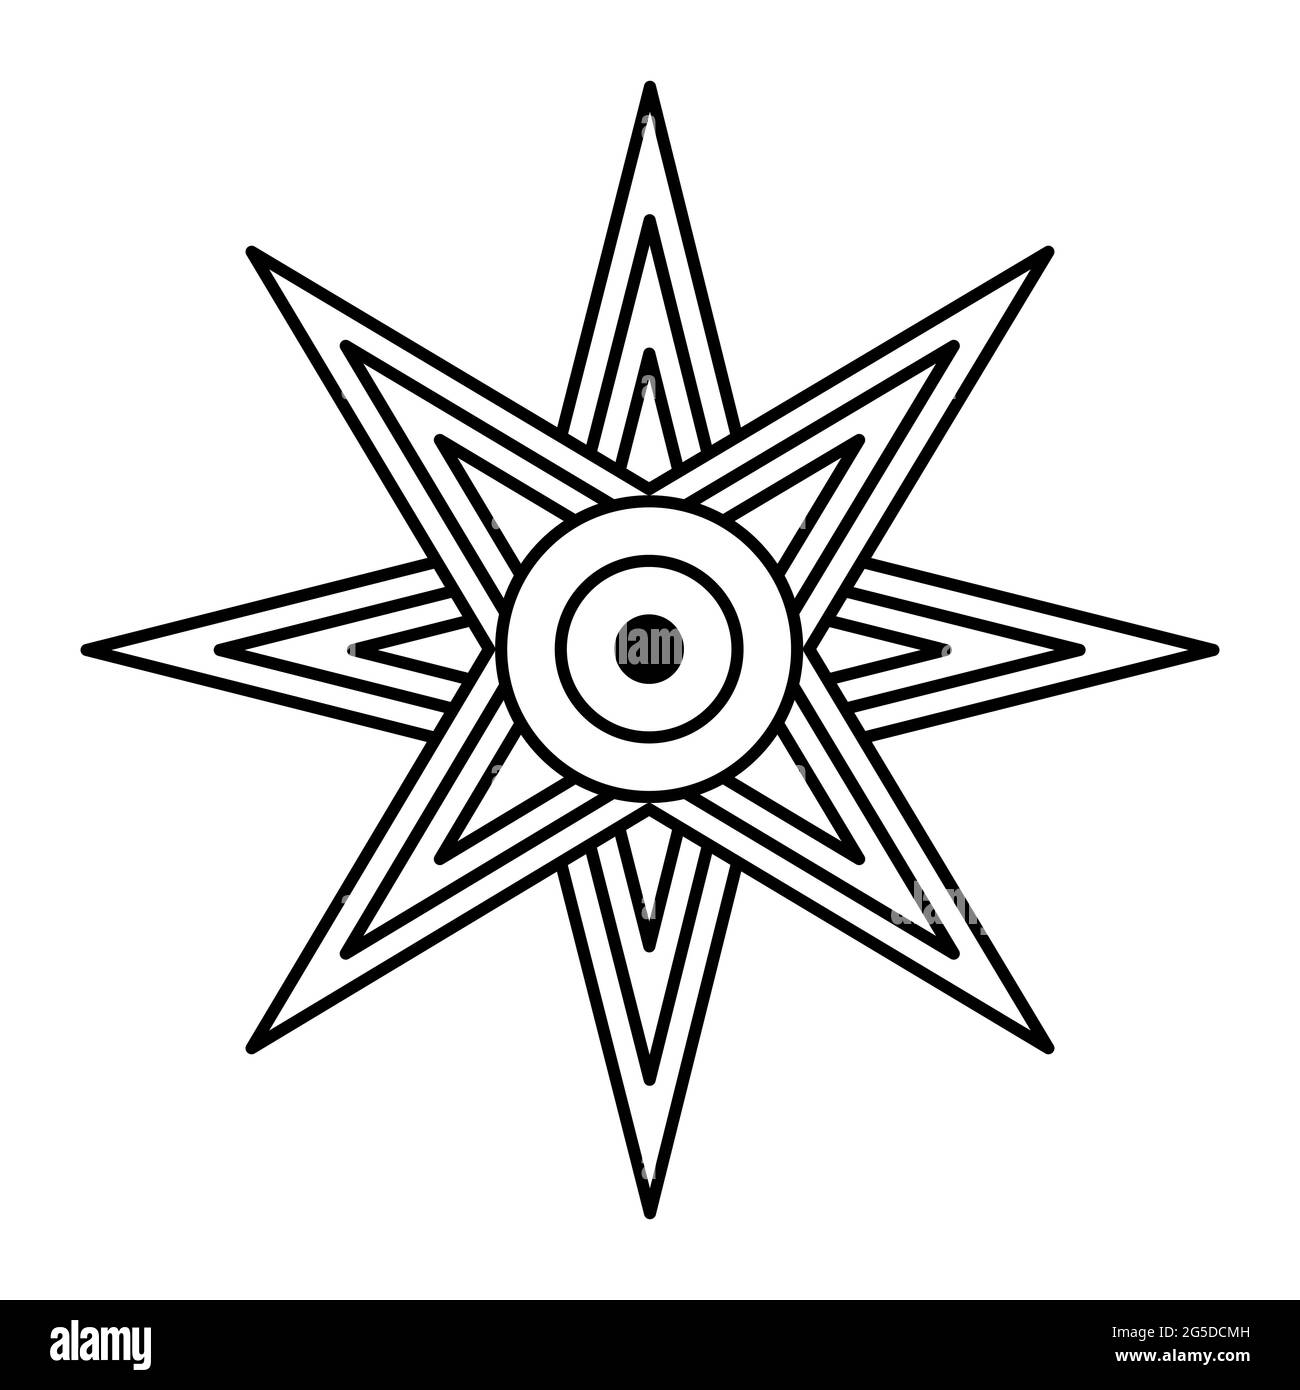 Der Stern von Ishtar oder Inanna, auch bekannt als der Stern der Venus, wird normalerweise mit acht Punkten dargestellt. Symbol der alten sumerischen Göttin Inanna. Stockfoto